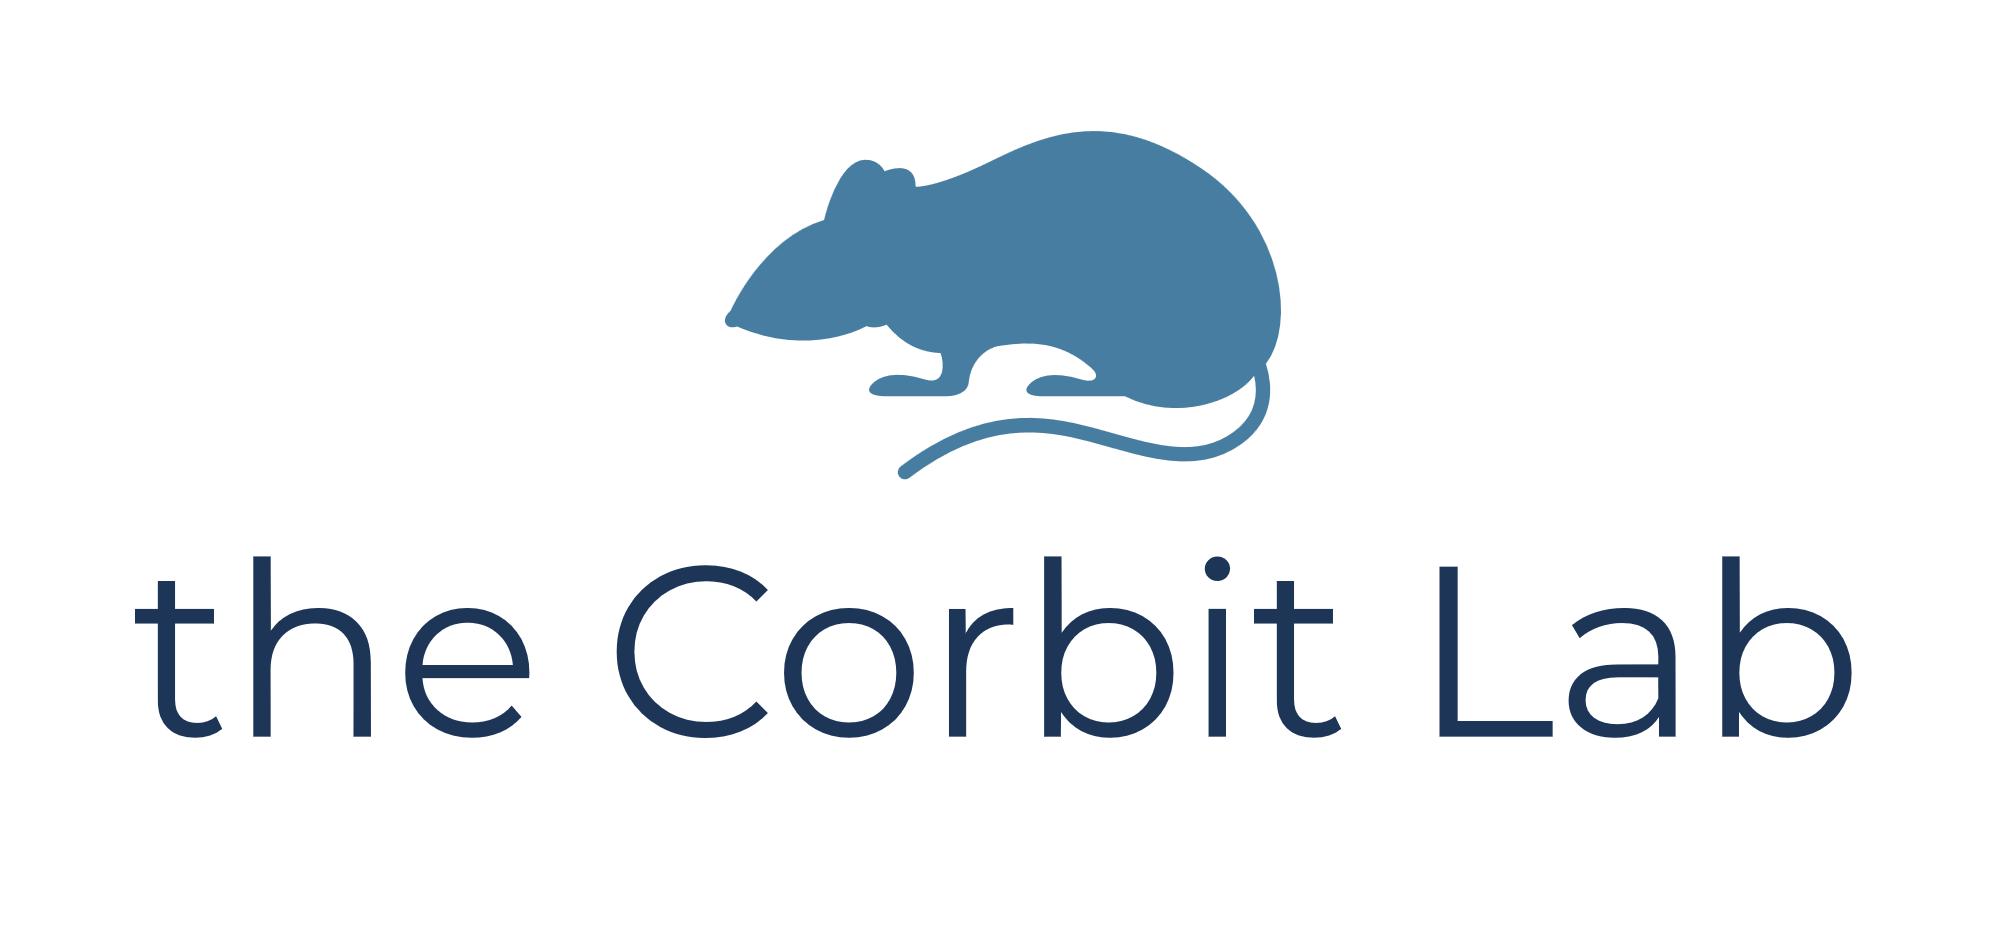 Corbit lab